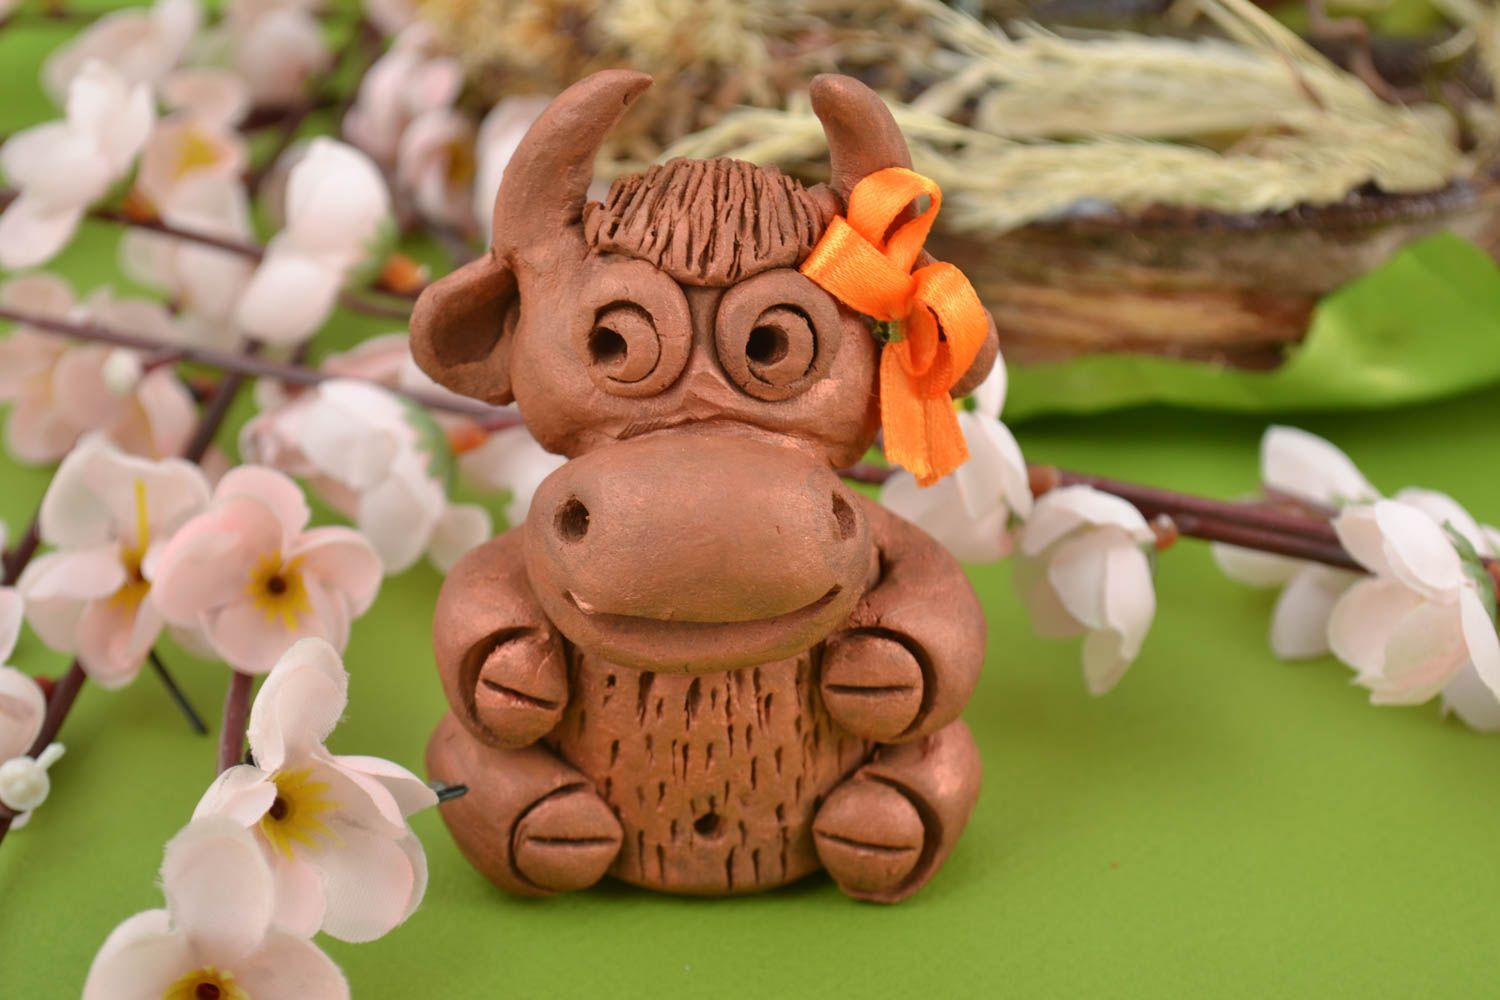 Ceramic figurine handmade animal figurines handmade home decor souvenir ideas photo 1